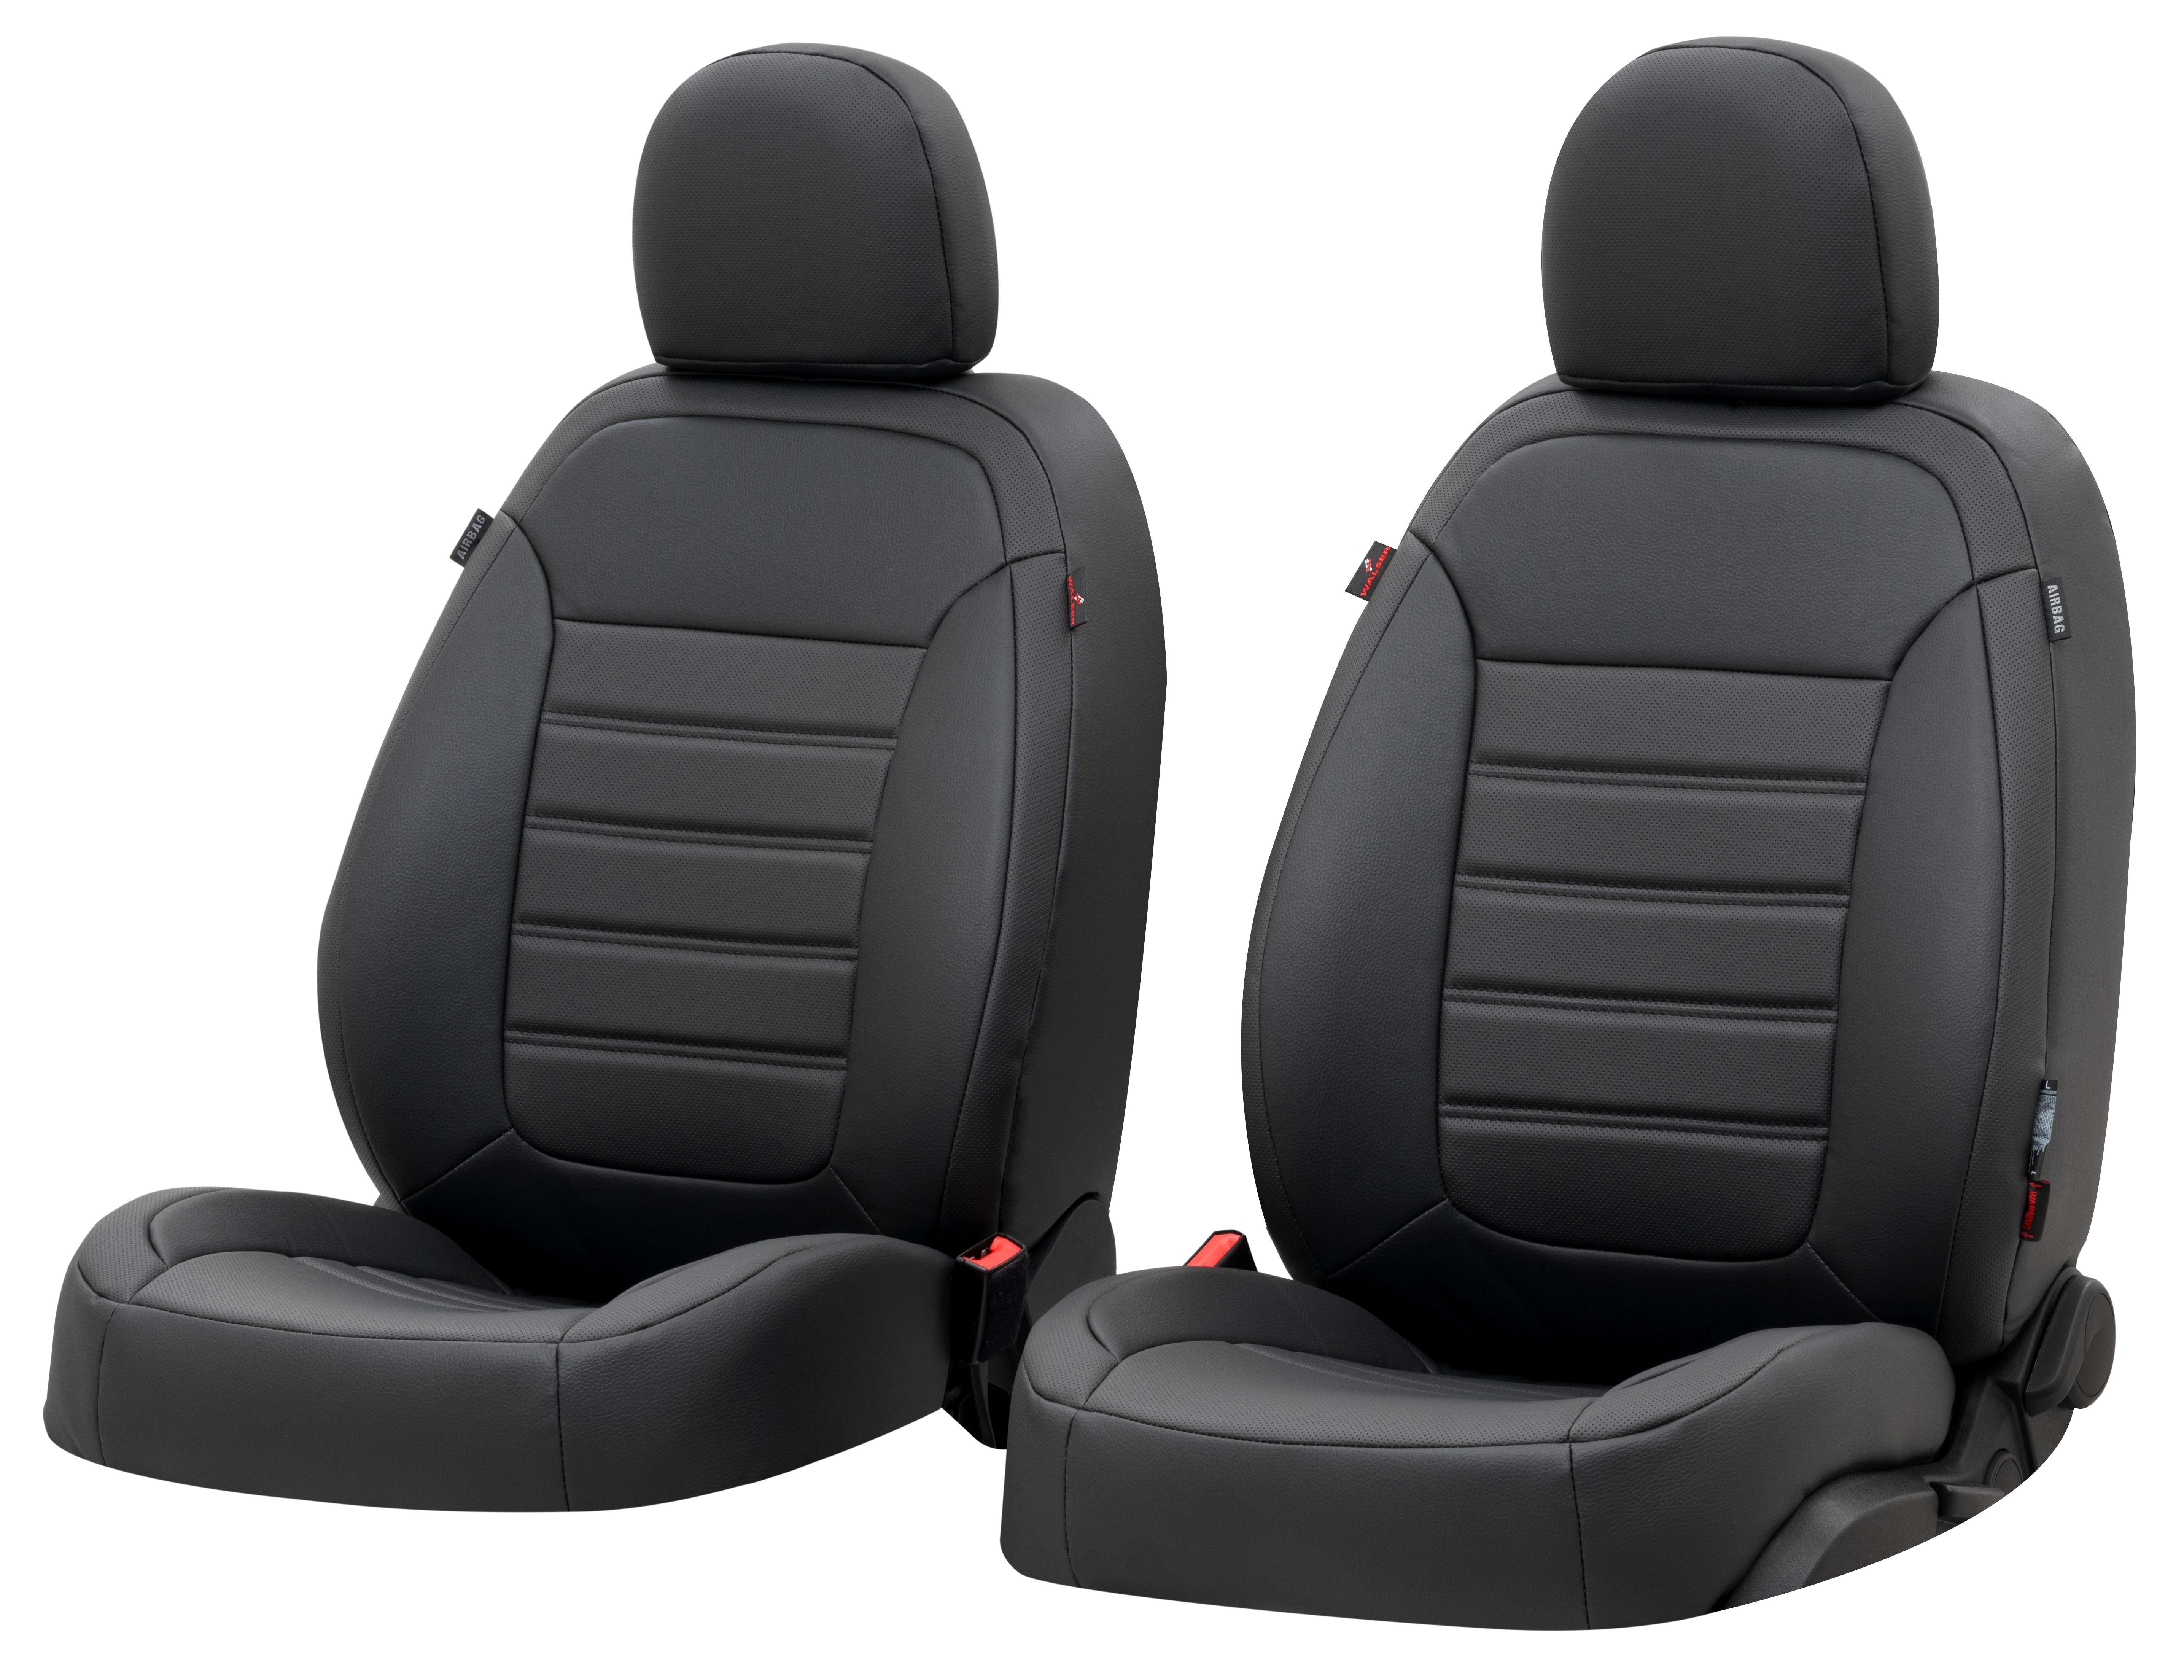 Auto stoelbekleding Robusto geschikt voor VW Golf VII Comfortline 08/2012-03/2021, 2 enkele zetelhoezen voor standard zetels